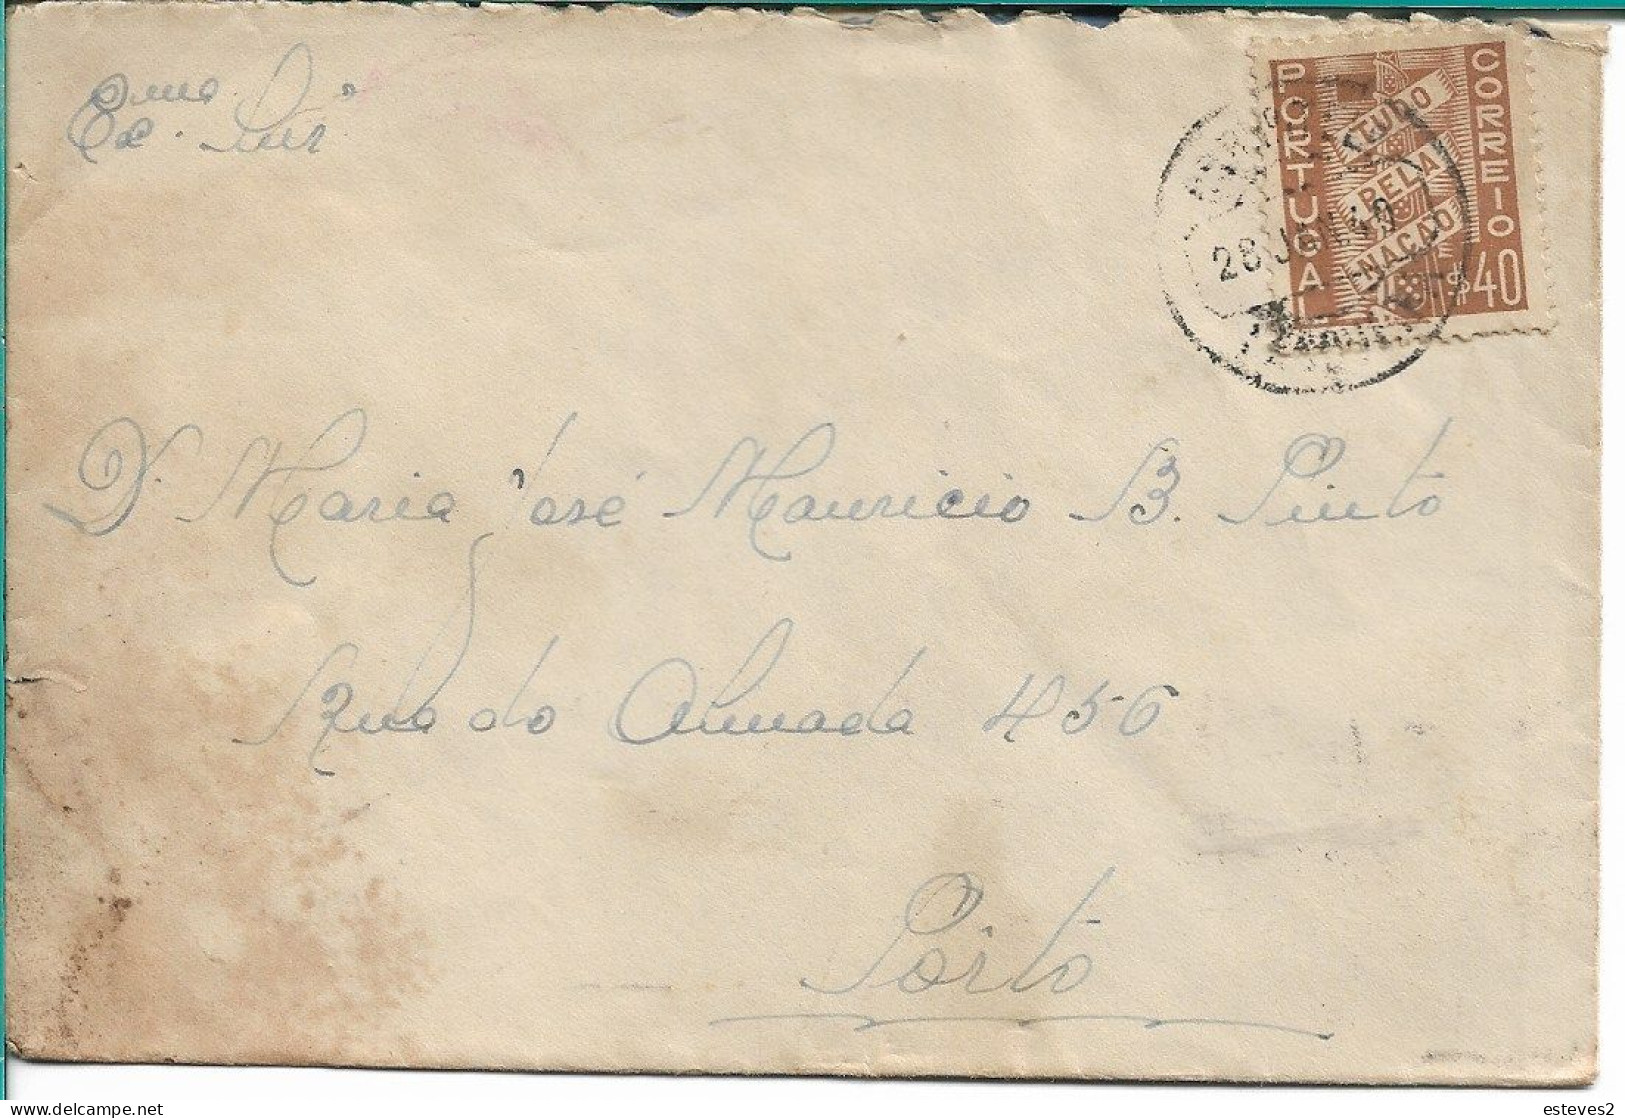 Portugal 1940 , Slogan Postmark POSTAIS ILUSTRADO CTT DIVULGUE AS BELEZAS DE PORTUGAL , Tudo Pela Nação Stamp - Postmark Collection